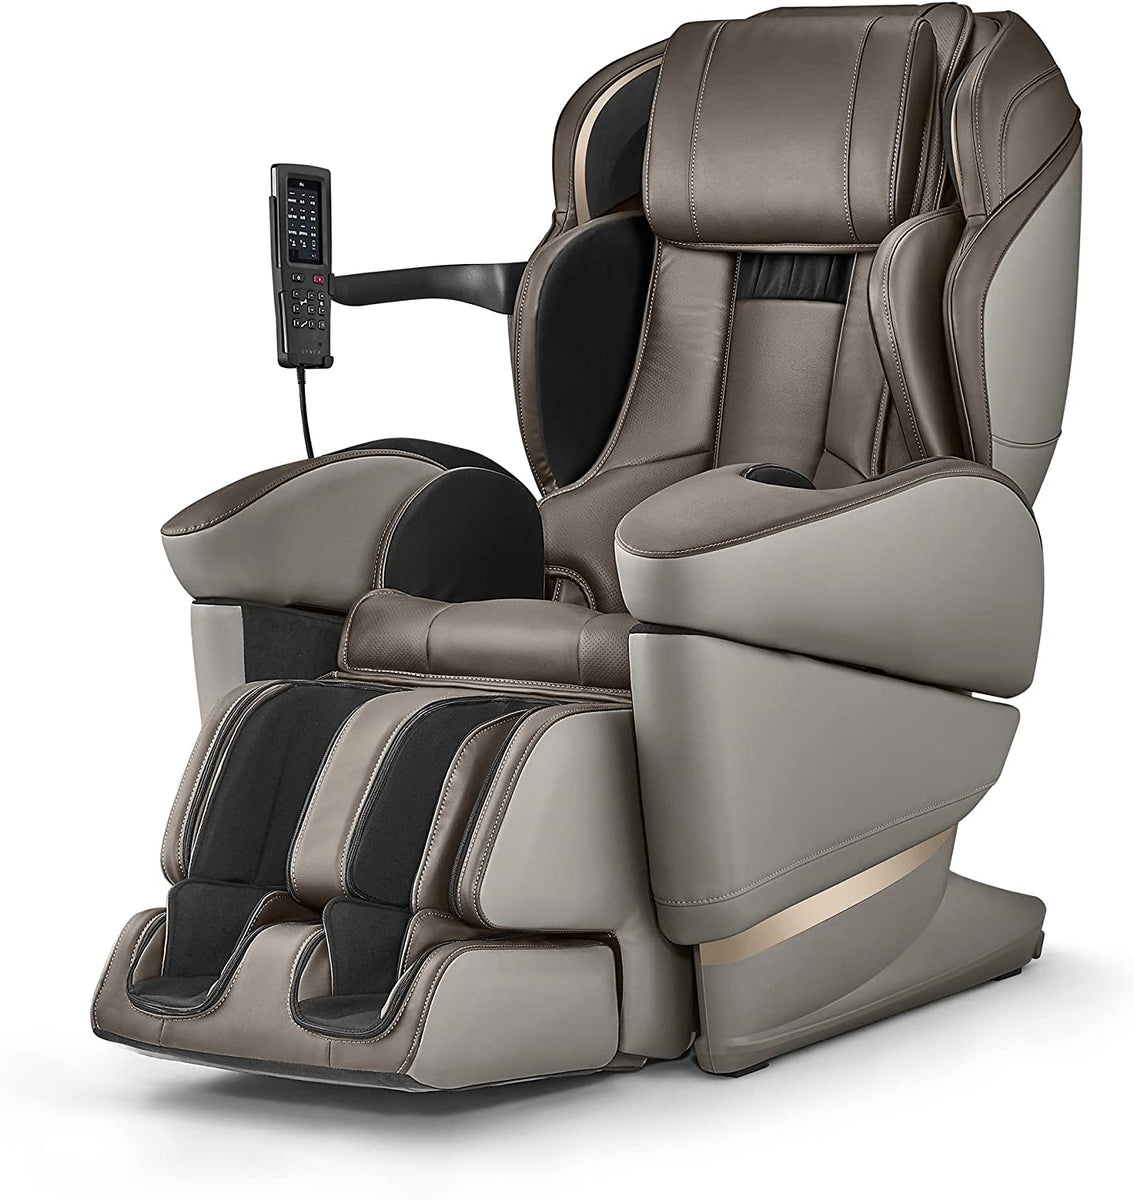 http://www.massagechairheaven.com/cdn/shop/products/syncamassage-chairssynca-wellness-jp3000-5d-ai-made-in-japan-ultra-premium-massage-chairbrown-smoke-beigemassage-chair-heaven-976392_1200x1200.jpg?v=1683642365